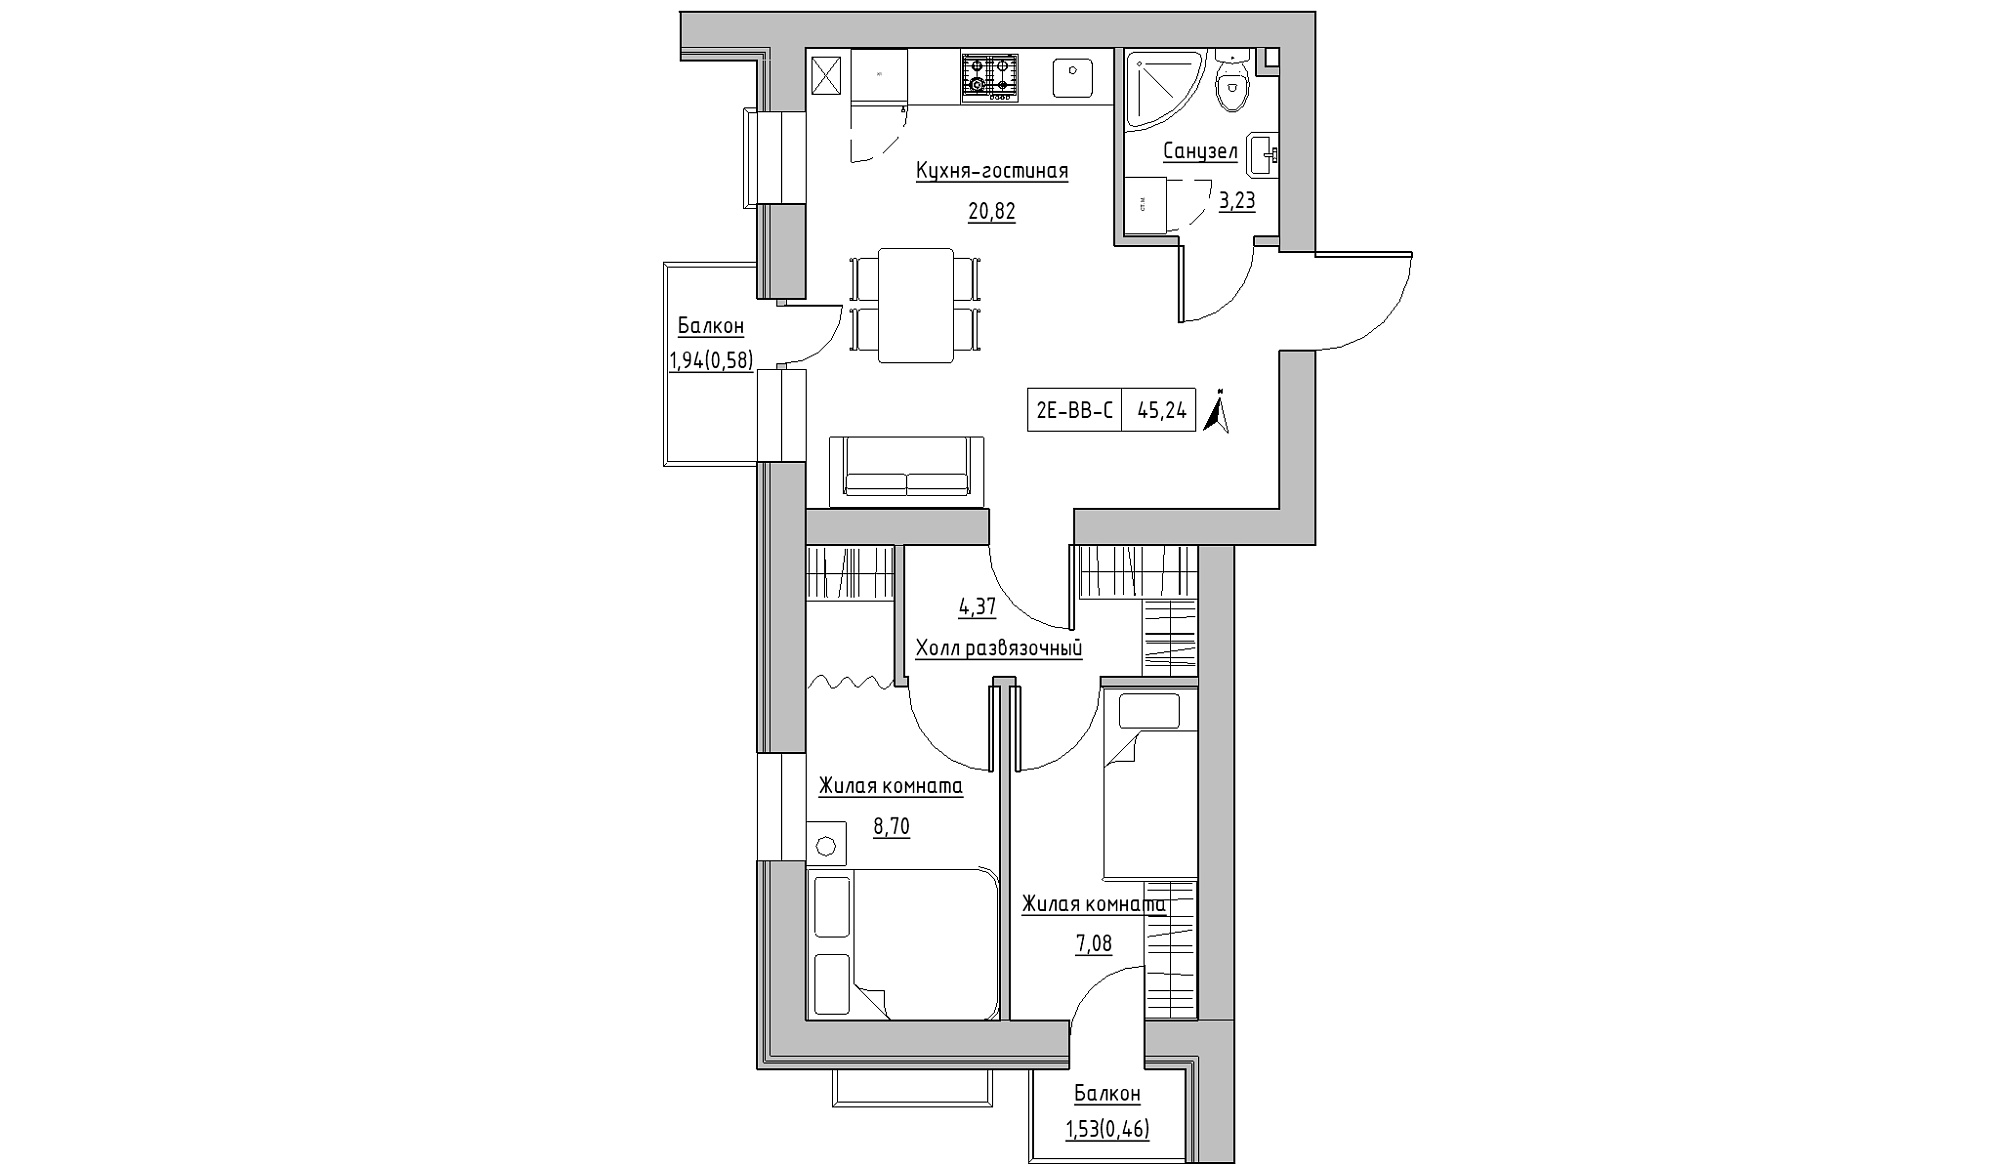 Планировка 2-к квартира площей 45.24м2, KS-016-05/0011.